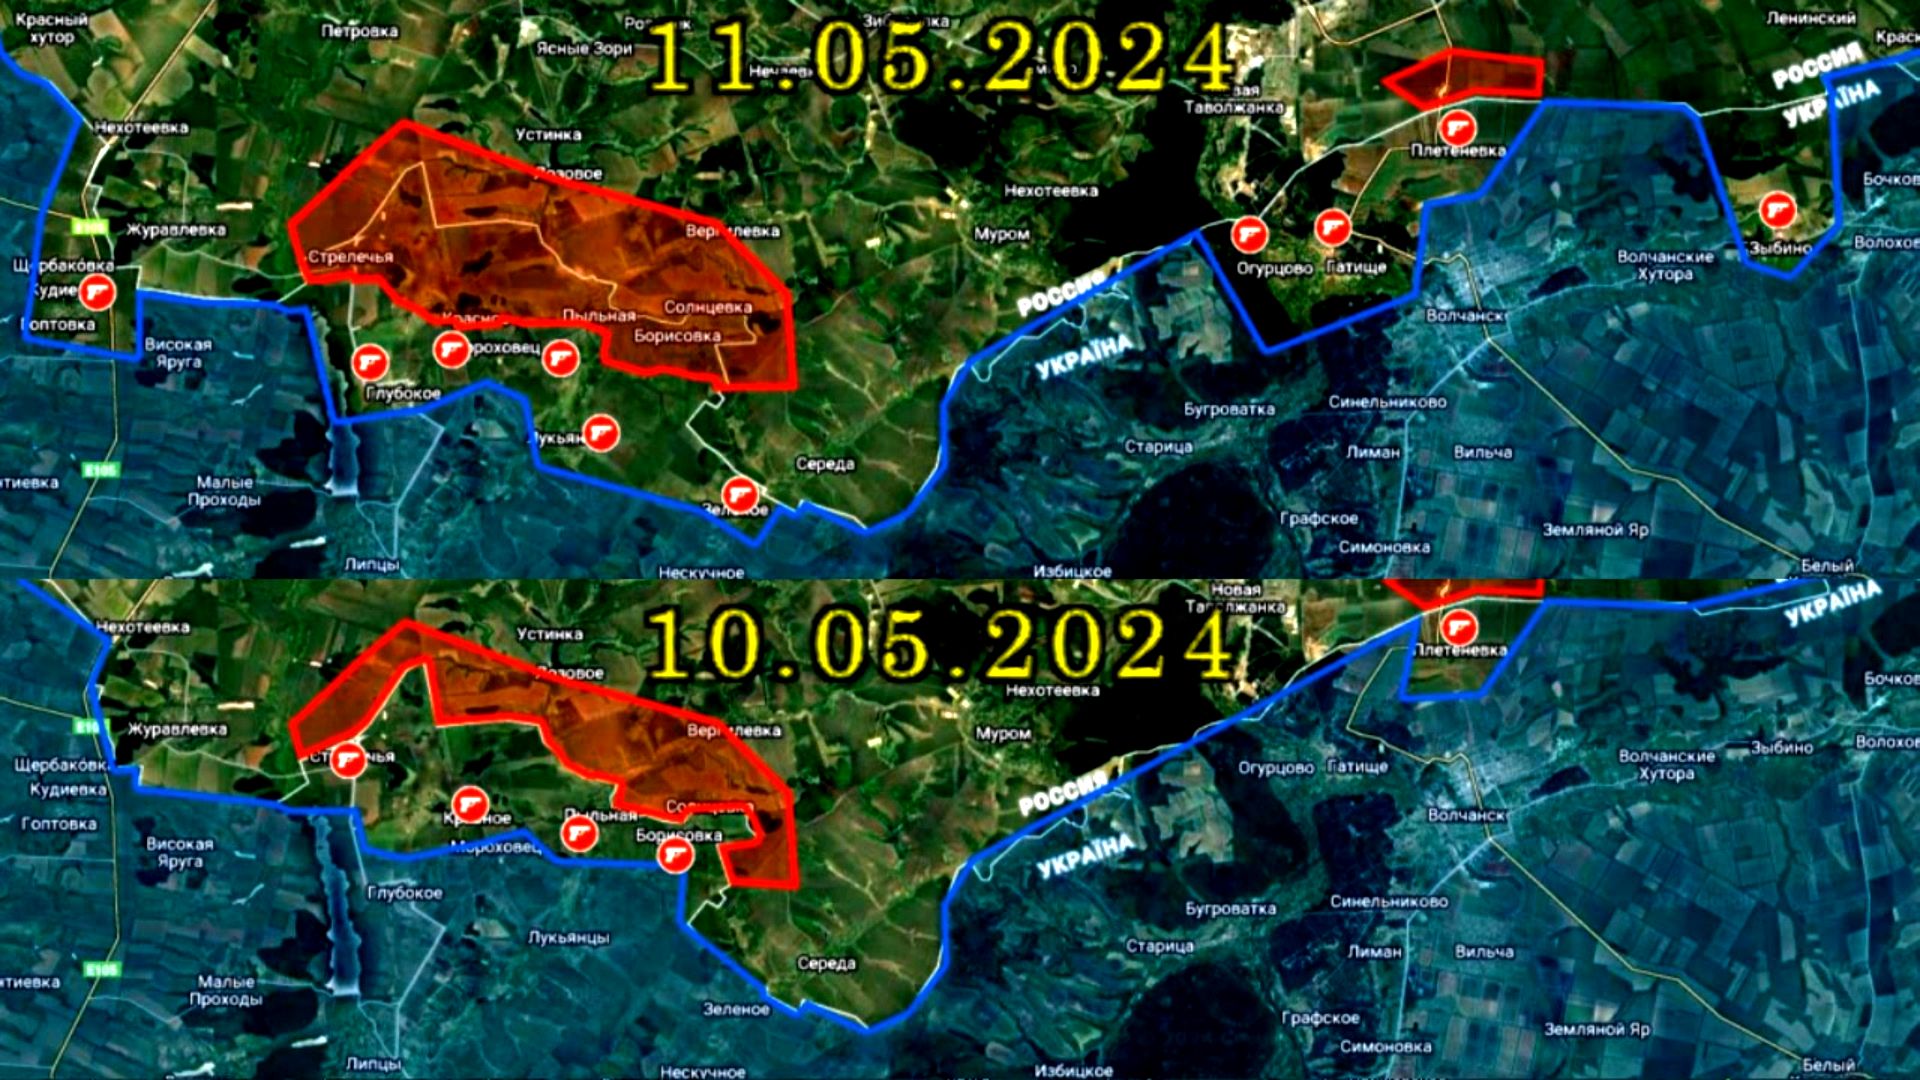 11.05.2024  Карта боевых действий. Бои в Харьковской области - укрорейх отступает